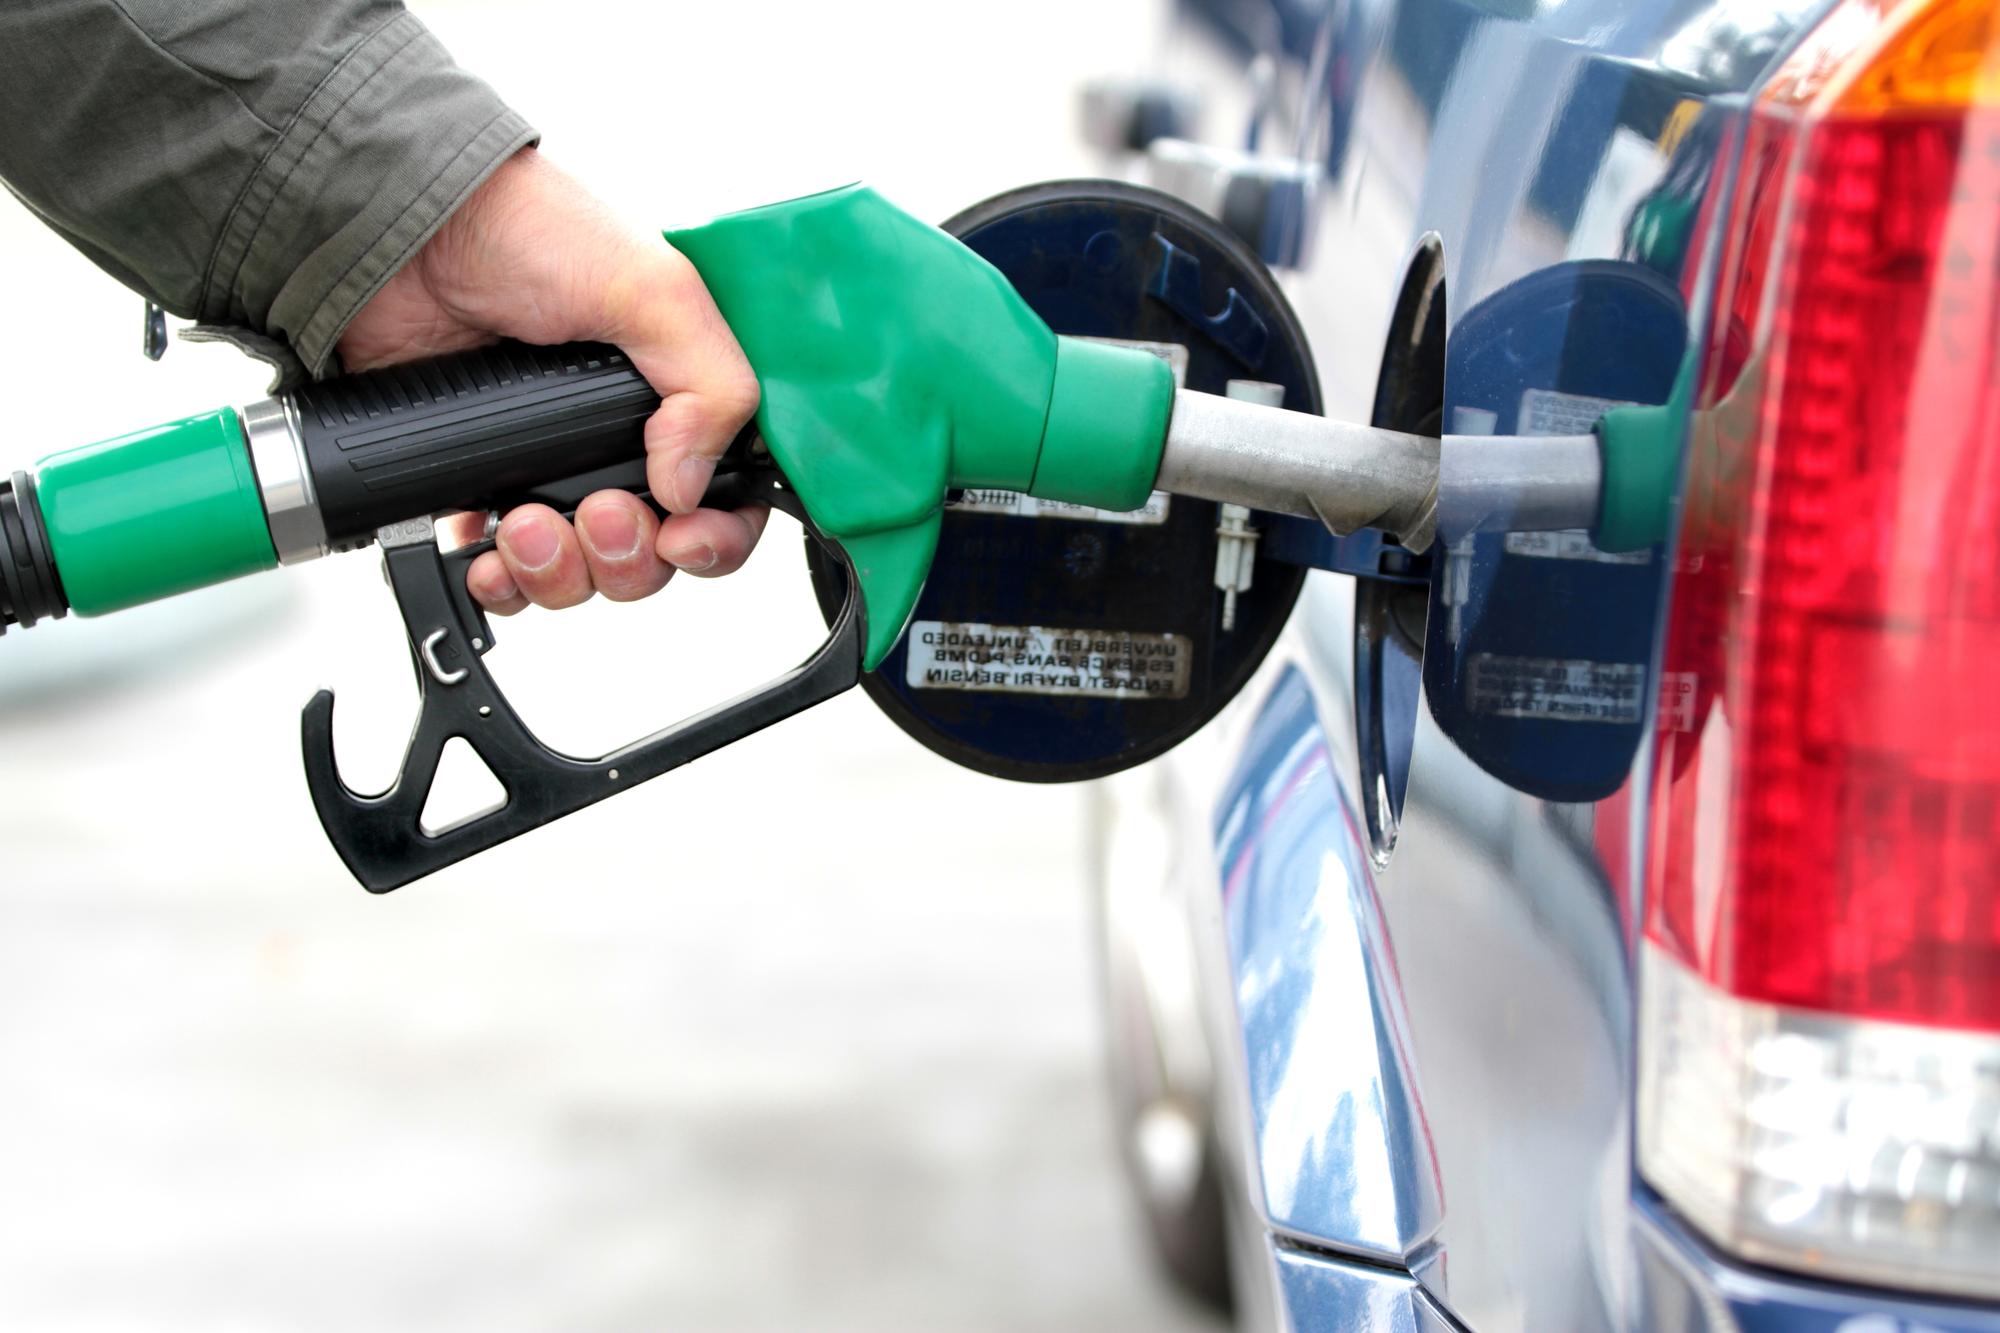   مركز معلومات مجلس الوزراء: لا زيارة جديدة في أسعار الوقود والمواد البترولية خلال العام الحالى